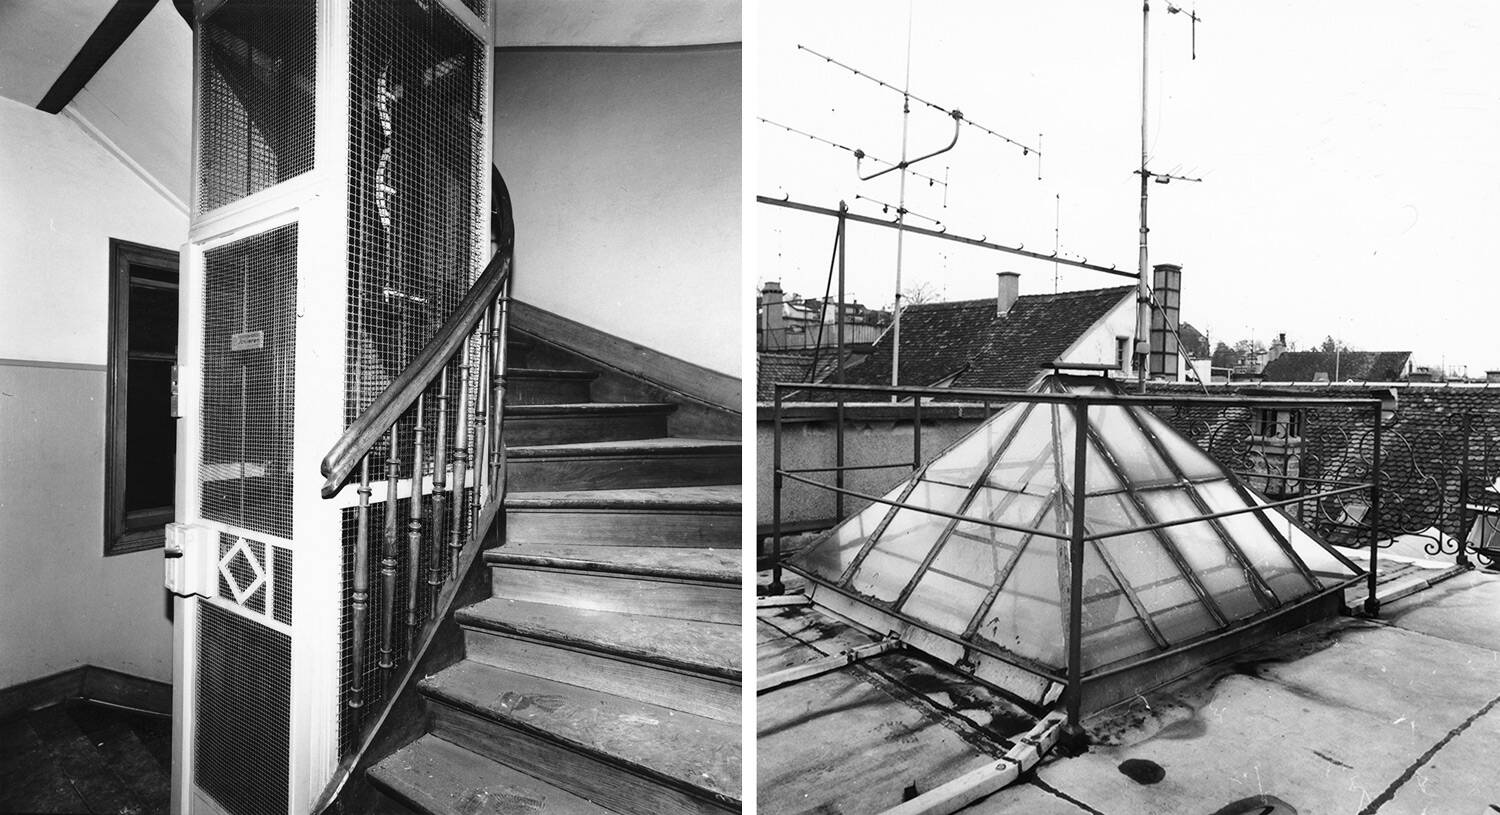 Historische Fotos in schwarzweiss der Treppenanlage und des Pyramidendaches über dem Liftschacht aus dem Jahr 1880